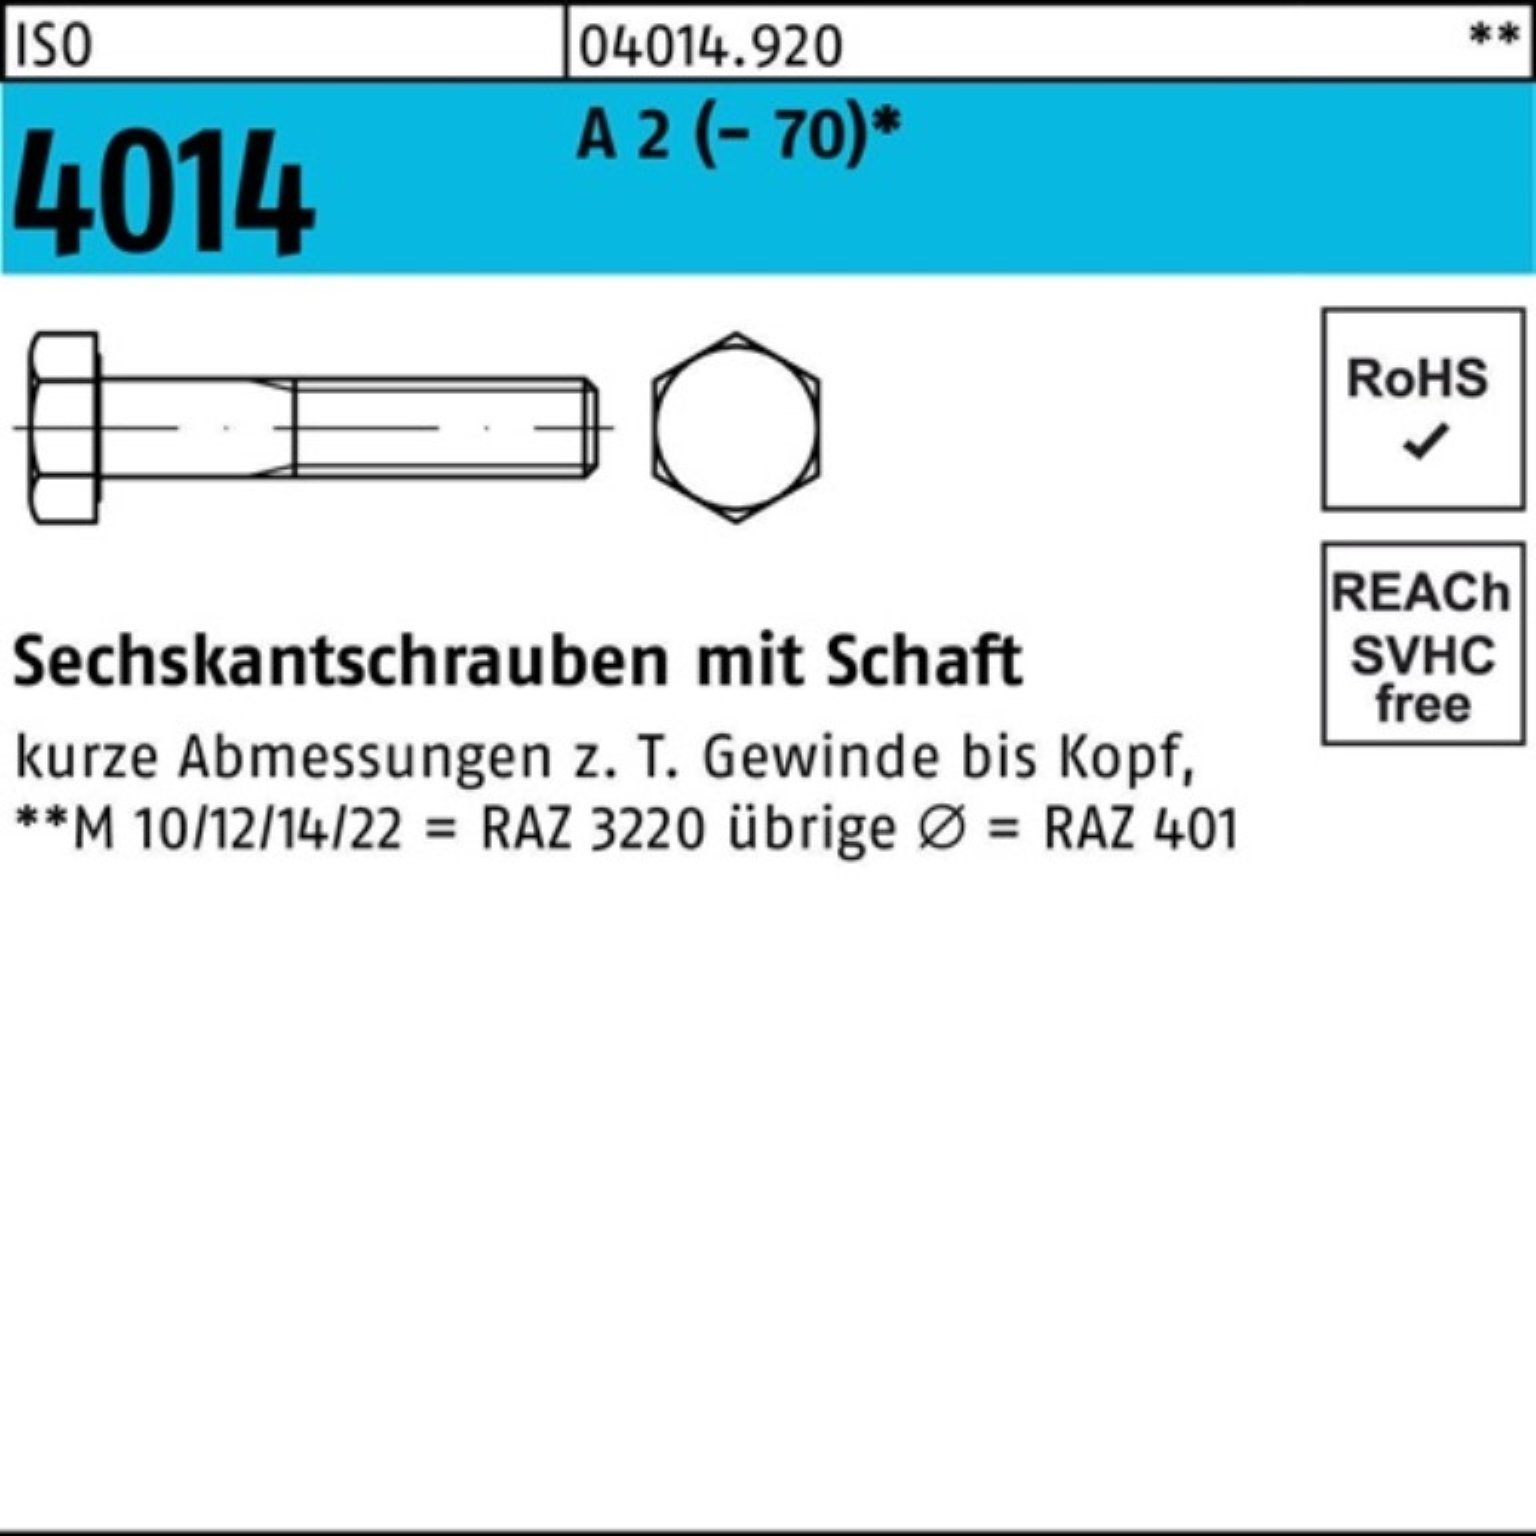 Bufab Sechskantschraube 100er Pack Sechskantschraube ISO 4014 Schaft M20x 130 A 2 (70) 1 St